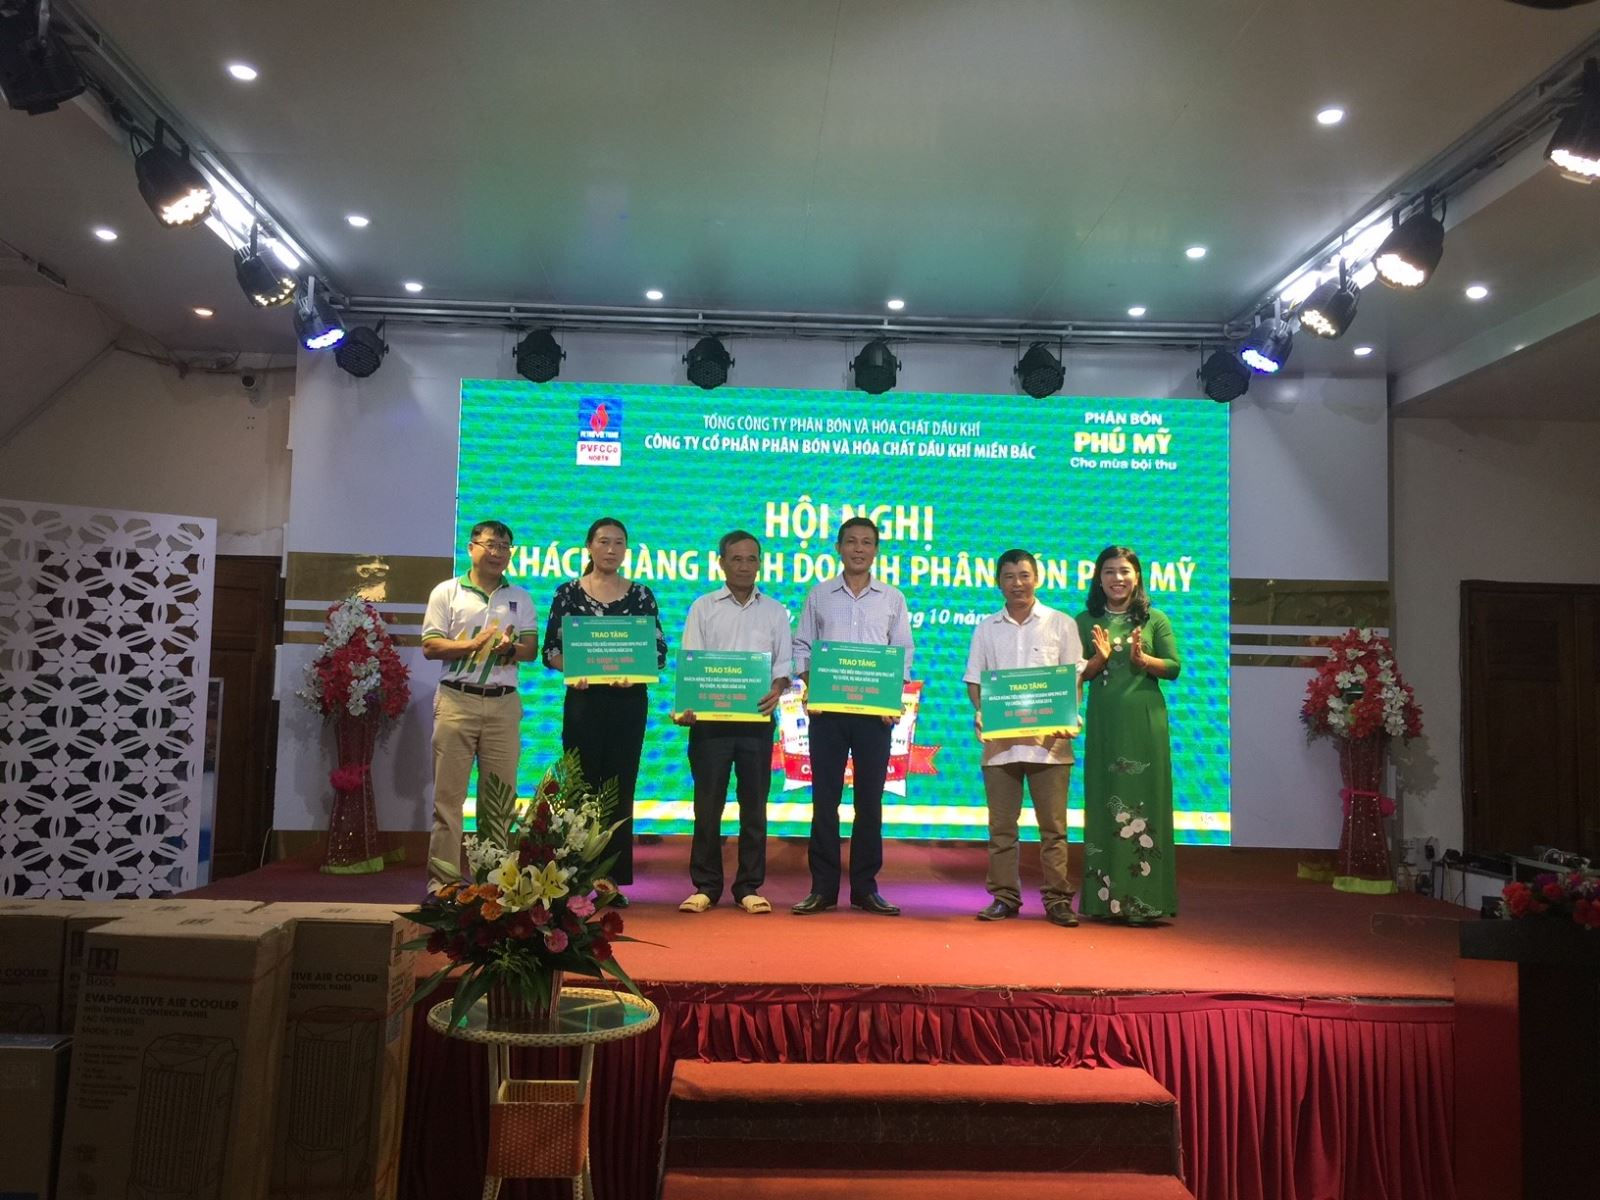 PVFCCo North tổ chức gặp mặt khách hàng kinh doanh phân bón Phú Mỹ tại Quảng Bình và Hà Tĩnh.